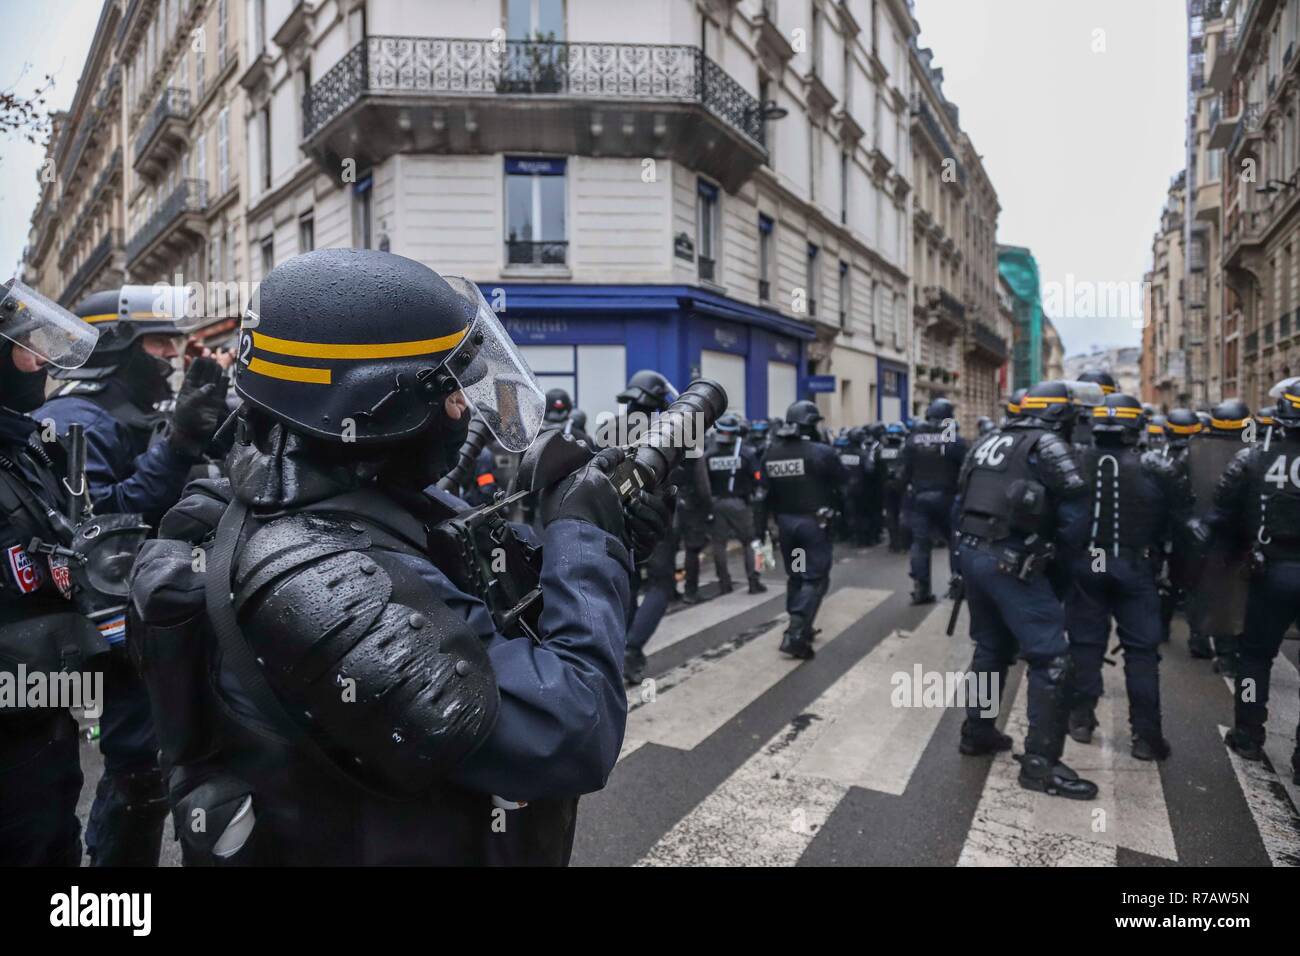 Paris protests: Scenes of destruction on Champs Elysées, Gallery